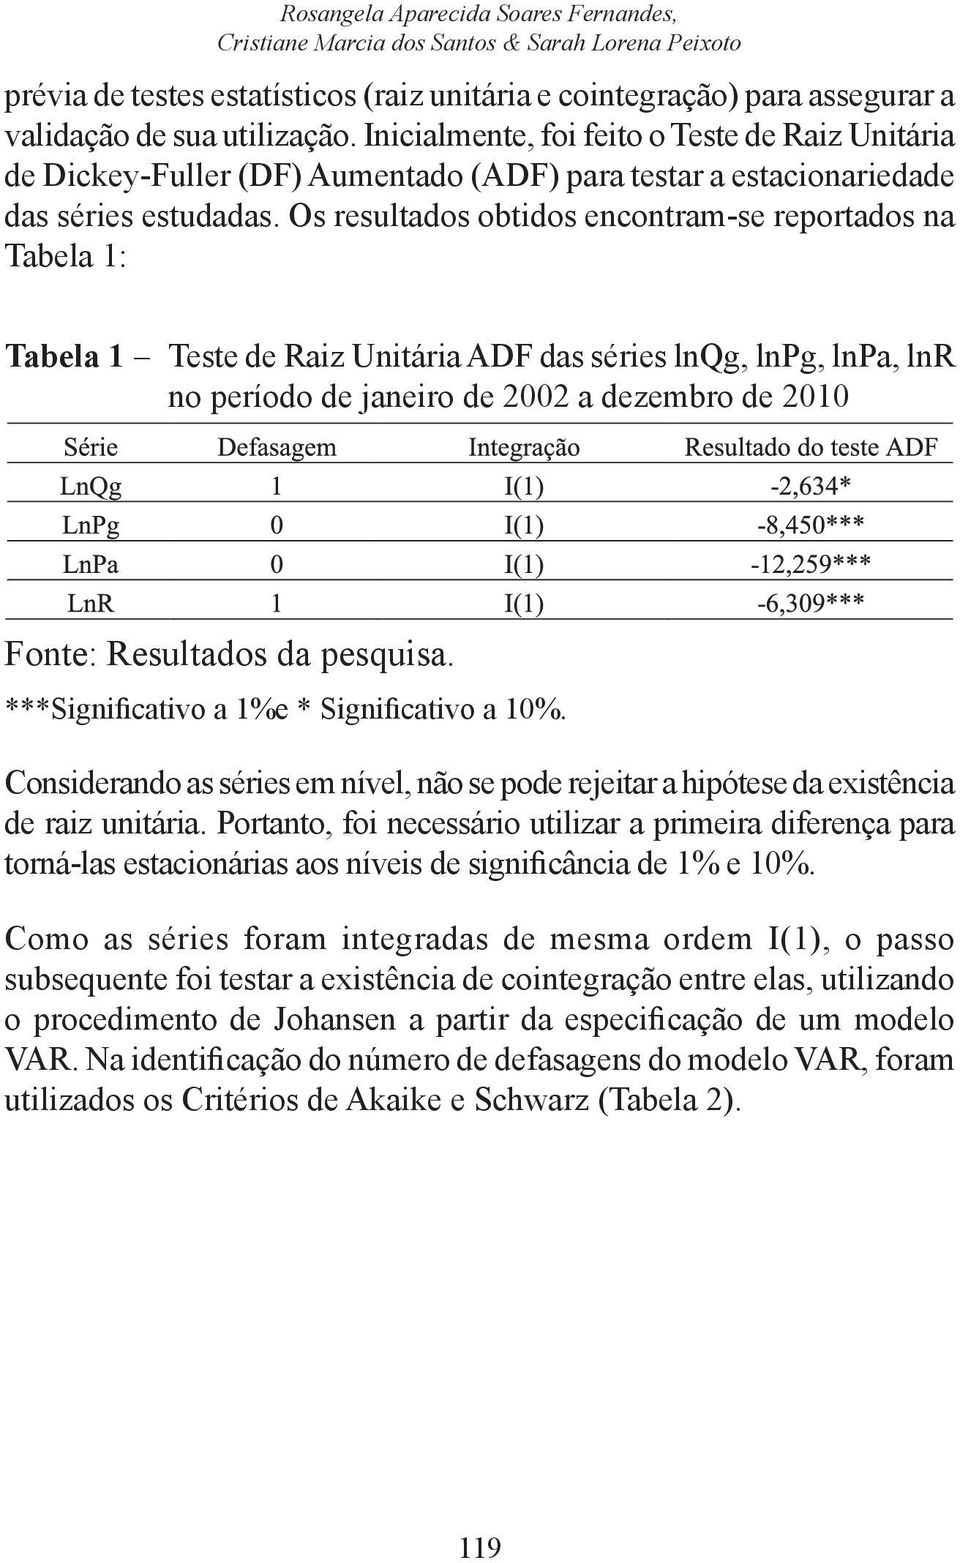 Os resulados obidos enconram-se reporados na Tabela 1: Tabela 1 Tese de Raiz Uniária ADF das séries lnqg, lnpg, lnpa, lnr no período de janeiro de 2002 a dezembro de 2010 Fone: Resulados da pesquisa.